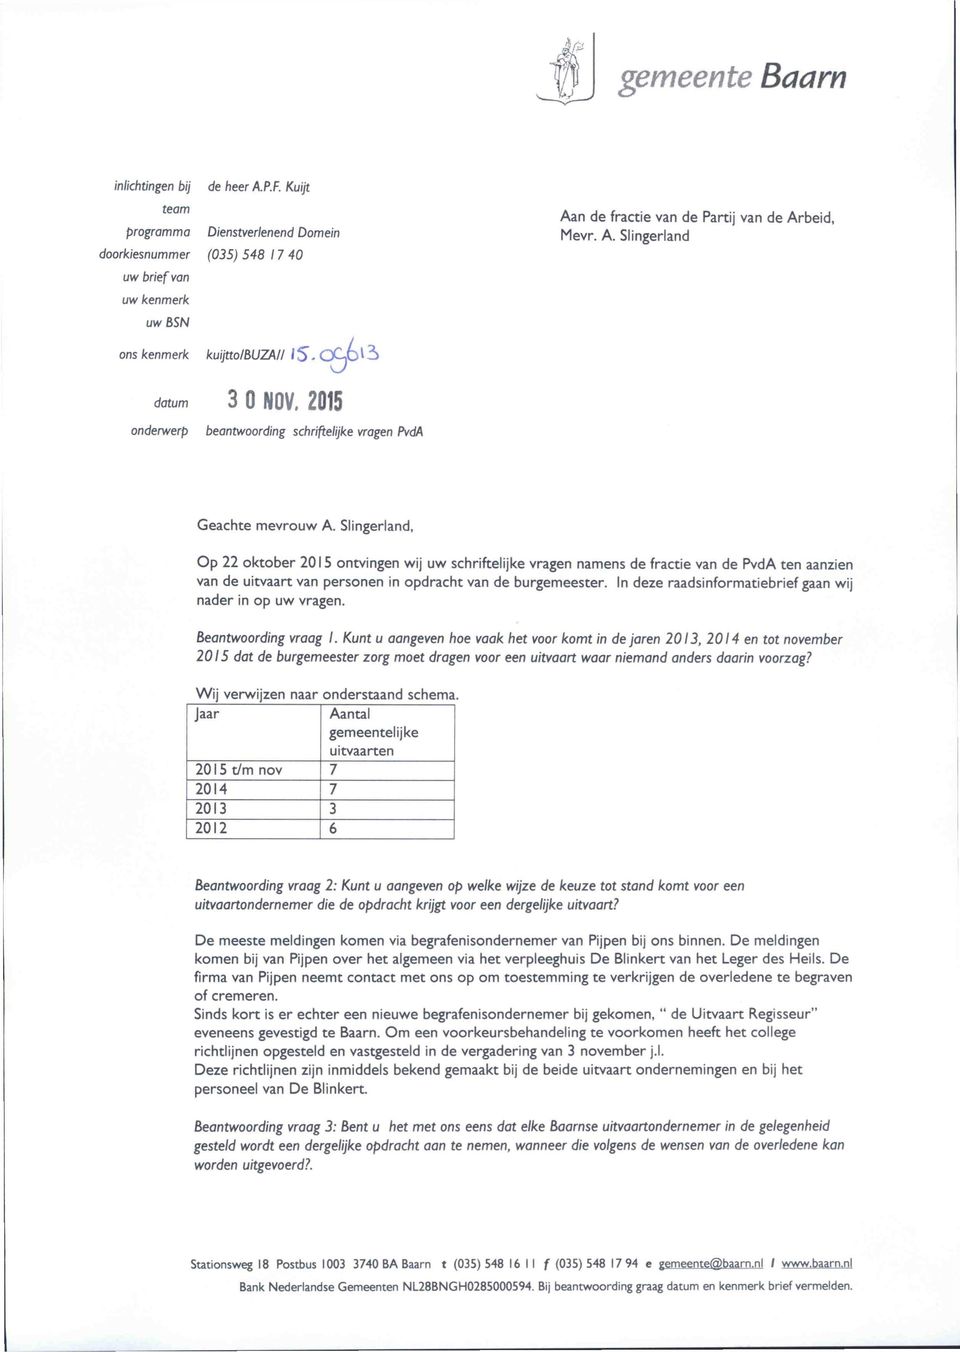 Slingerland, Op 22 oktober 2015 ontvingen wij uw schriftelijke vragen namens de fractie van de PvdA ten aanzien van de uitvaart van personen in opdracht van de burgemeester.